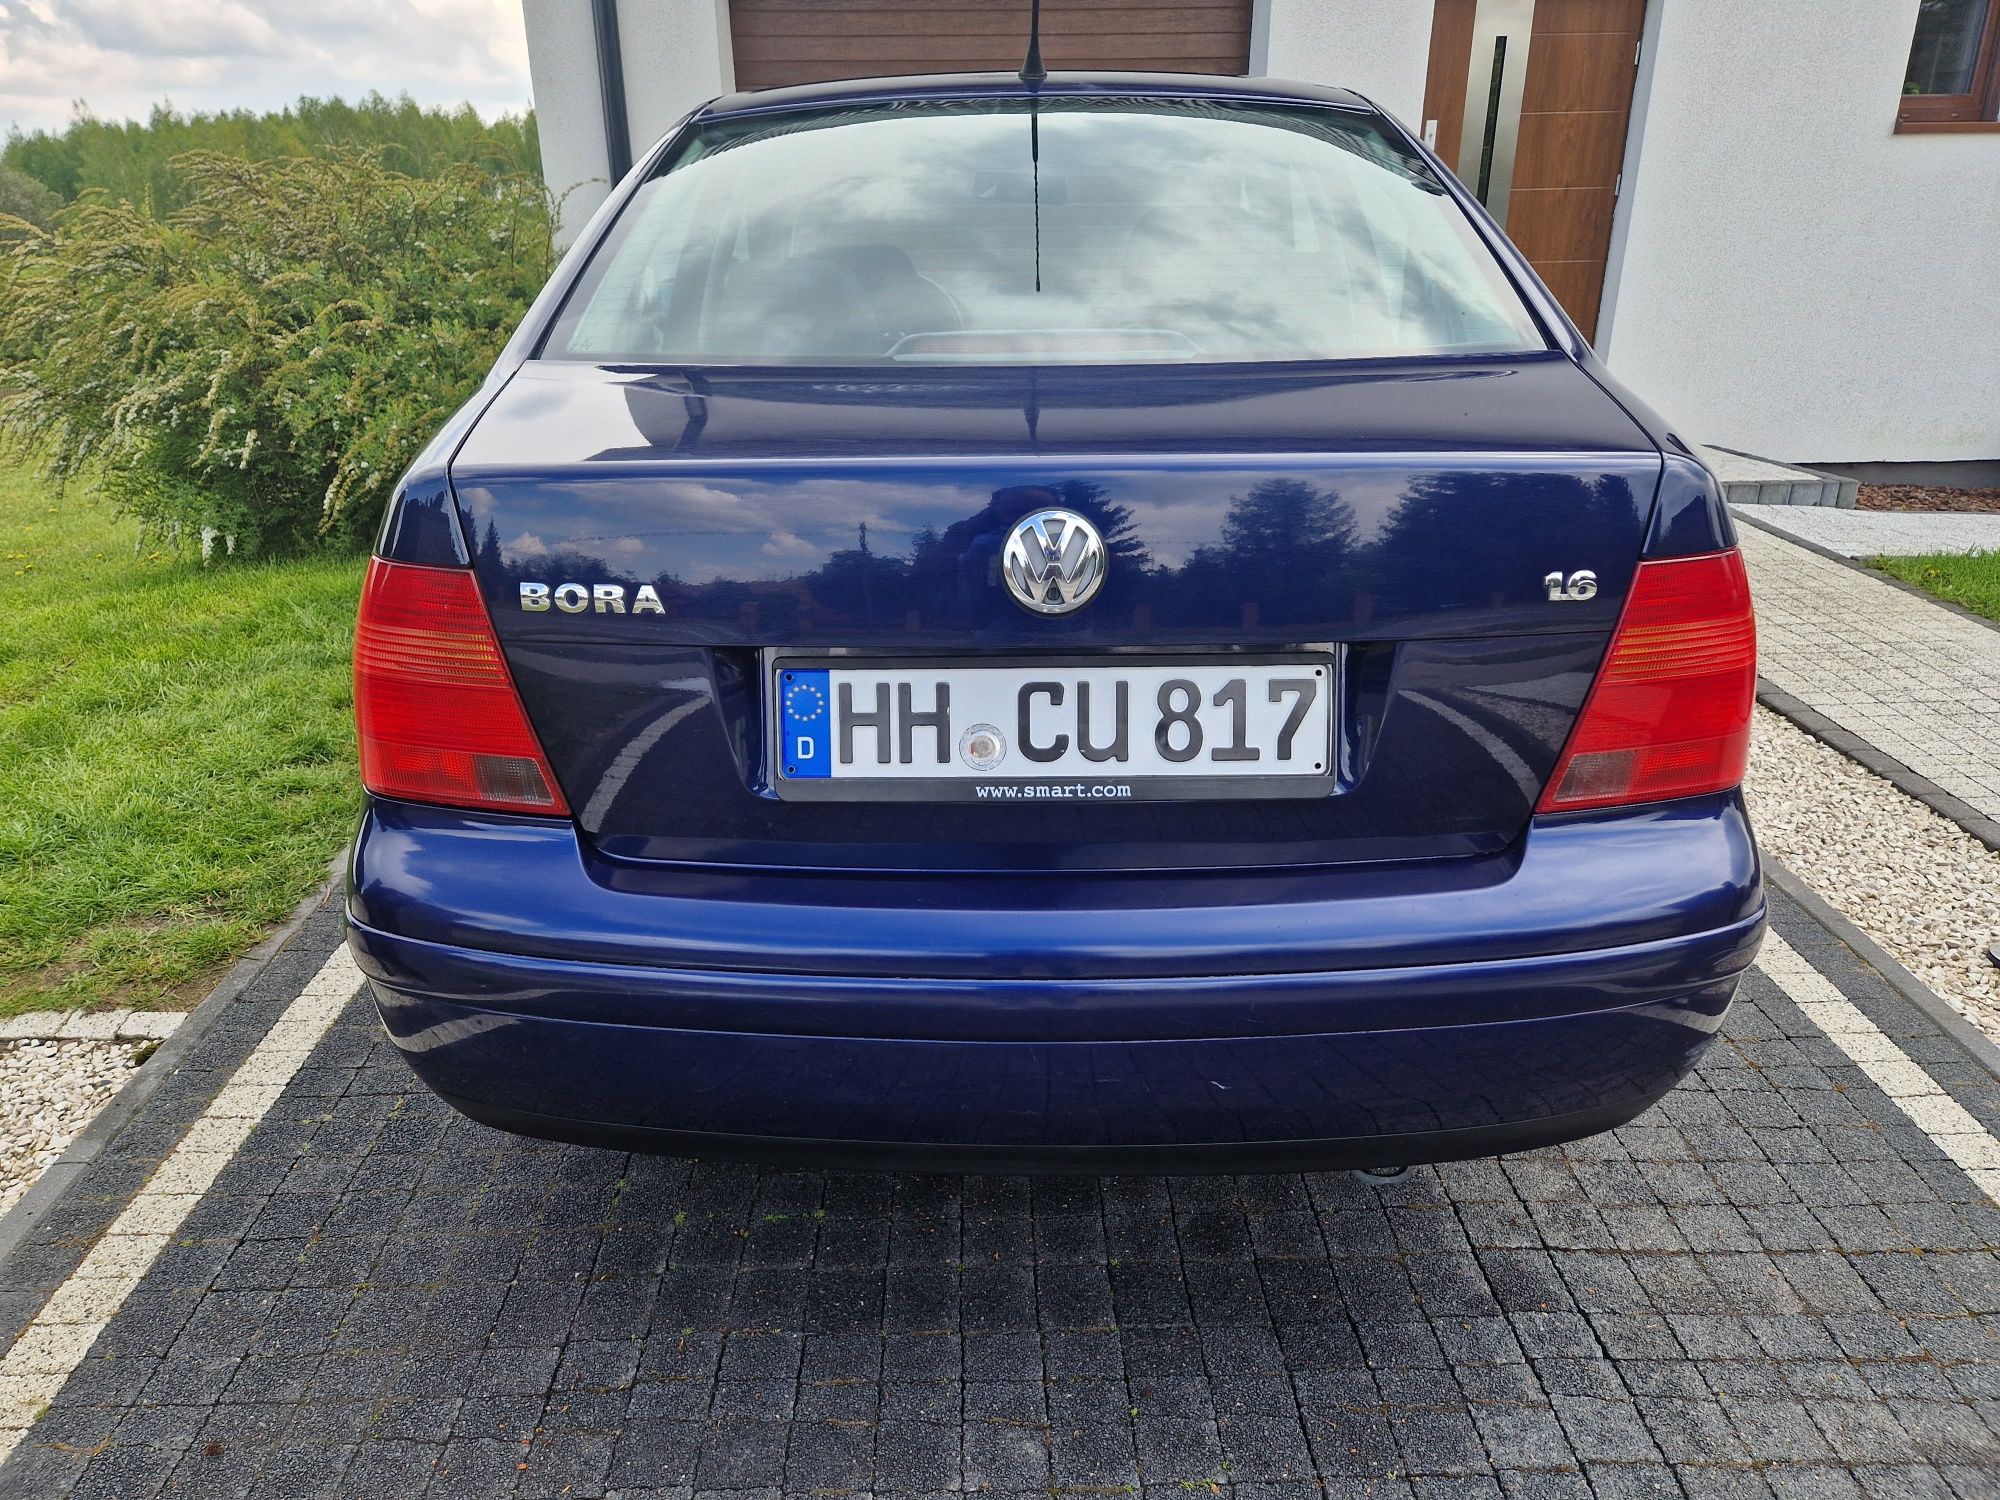 Sprzedam VW Bora 1.6 benzyna klima, alufelgi, oryginalny przebieg